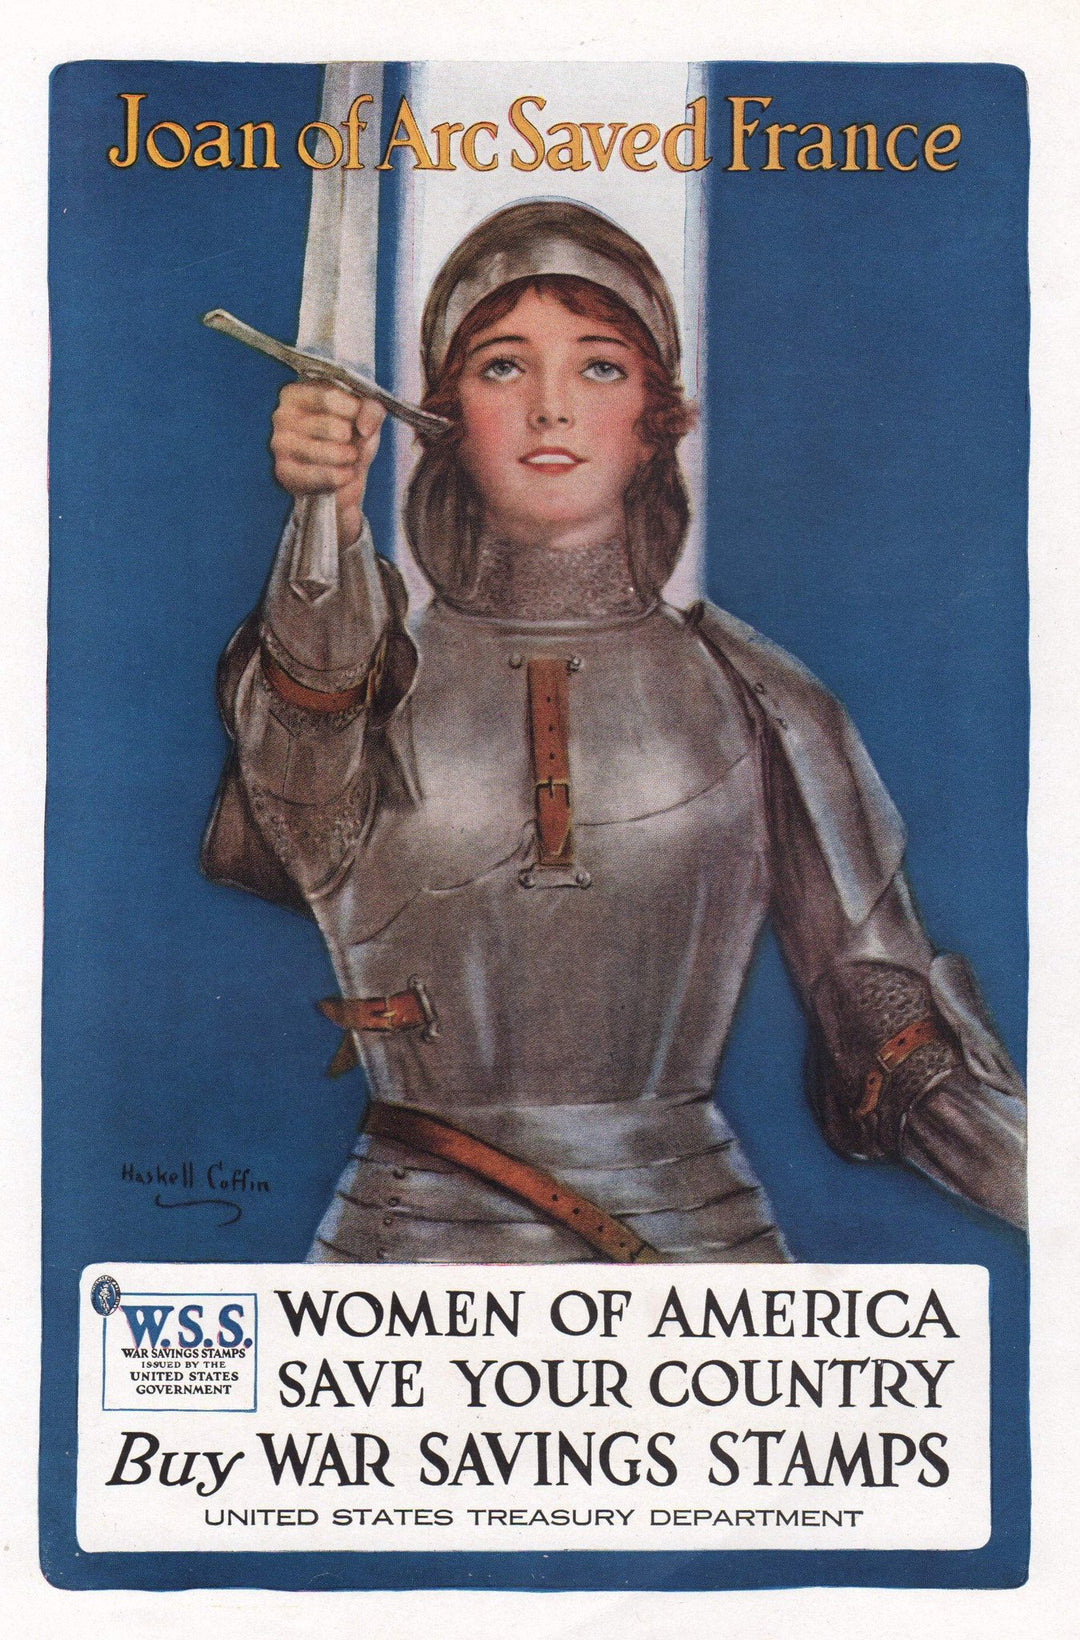 Joan of Arc Saved France Vintage WWI War Bonds Graphic Illustration Poster Print